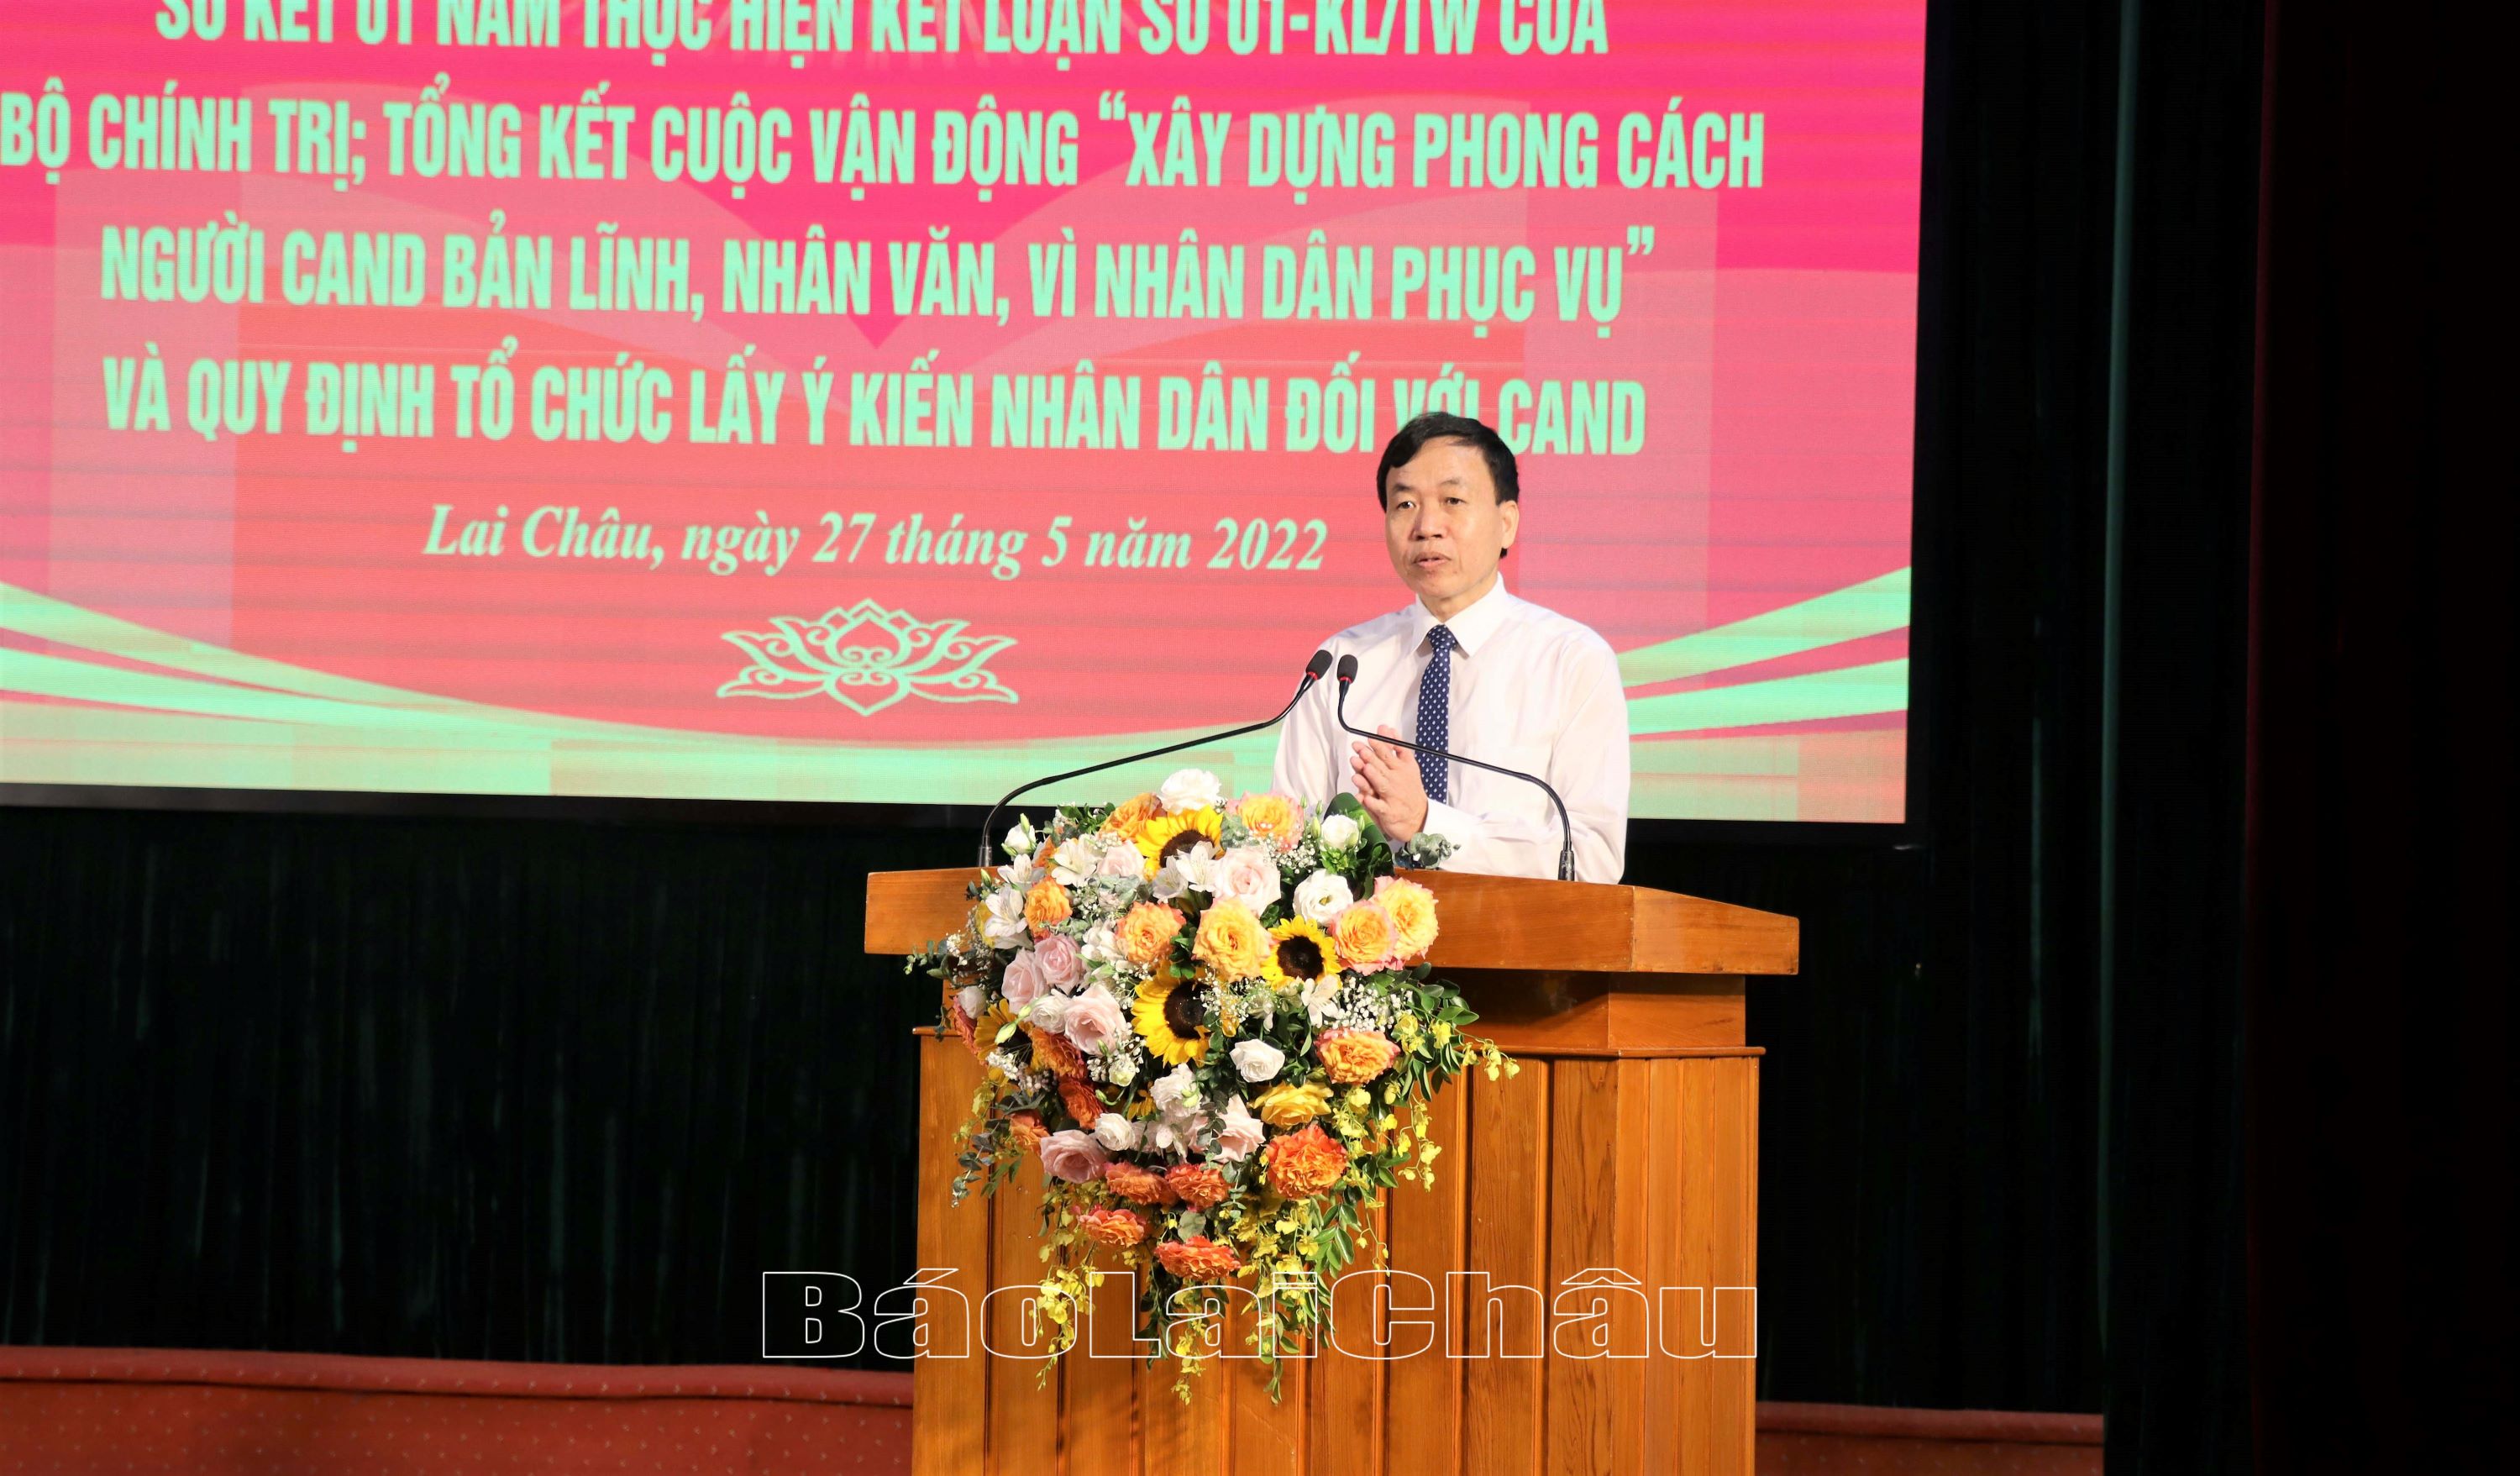 Đồng chí Lê Văn Lương, Phó Bí thư Thường trực Tỉnh ủy phát biểu tạ hội nghị.